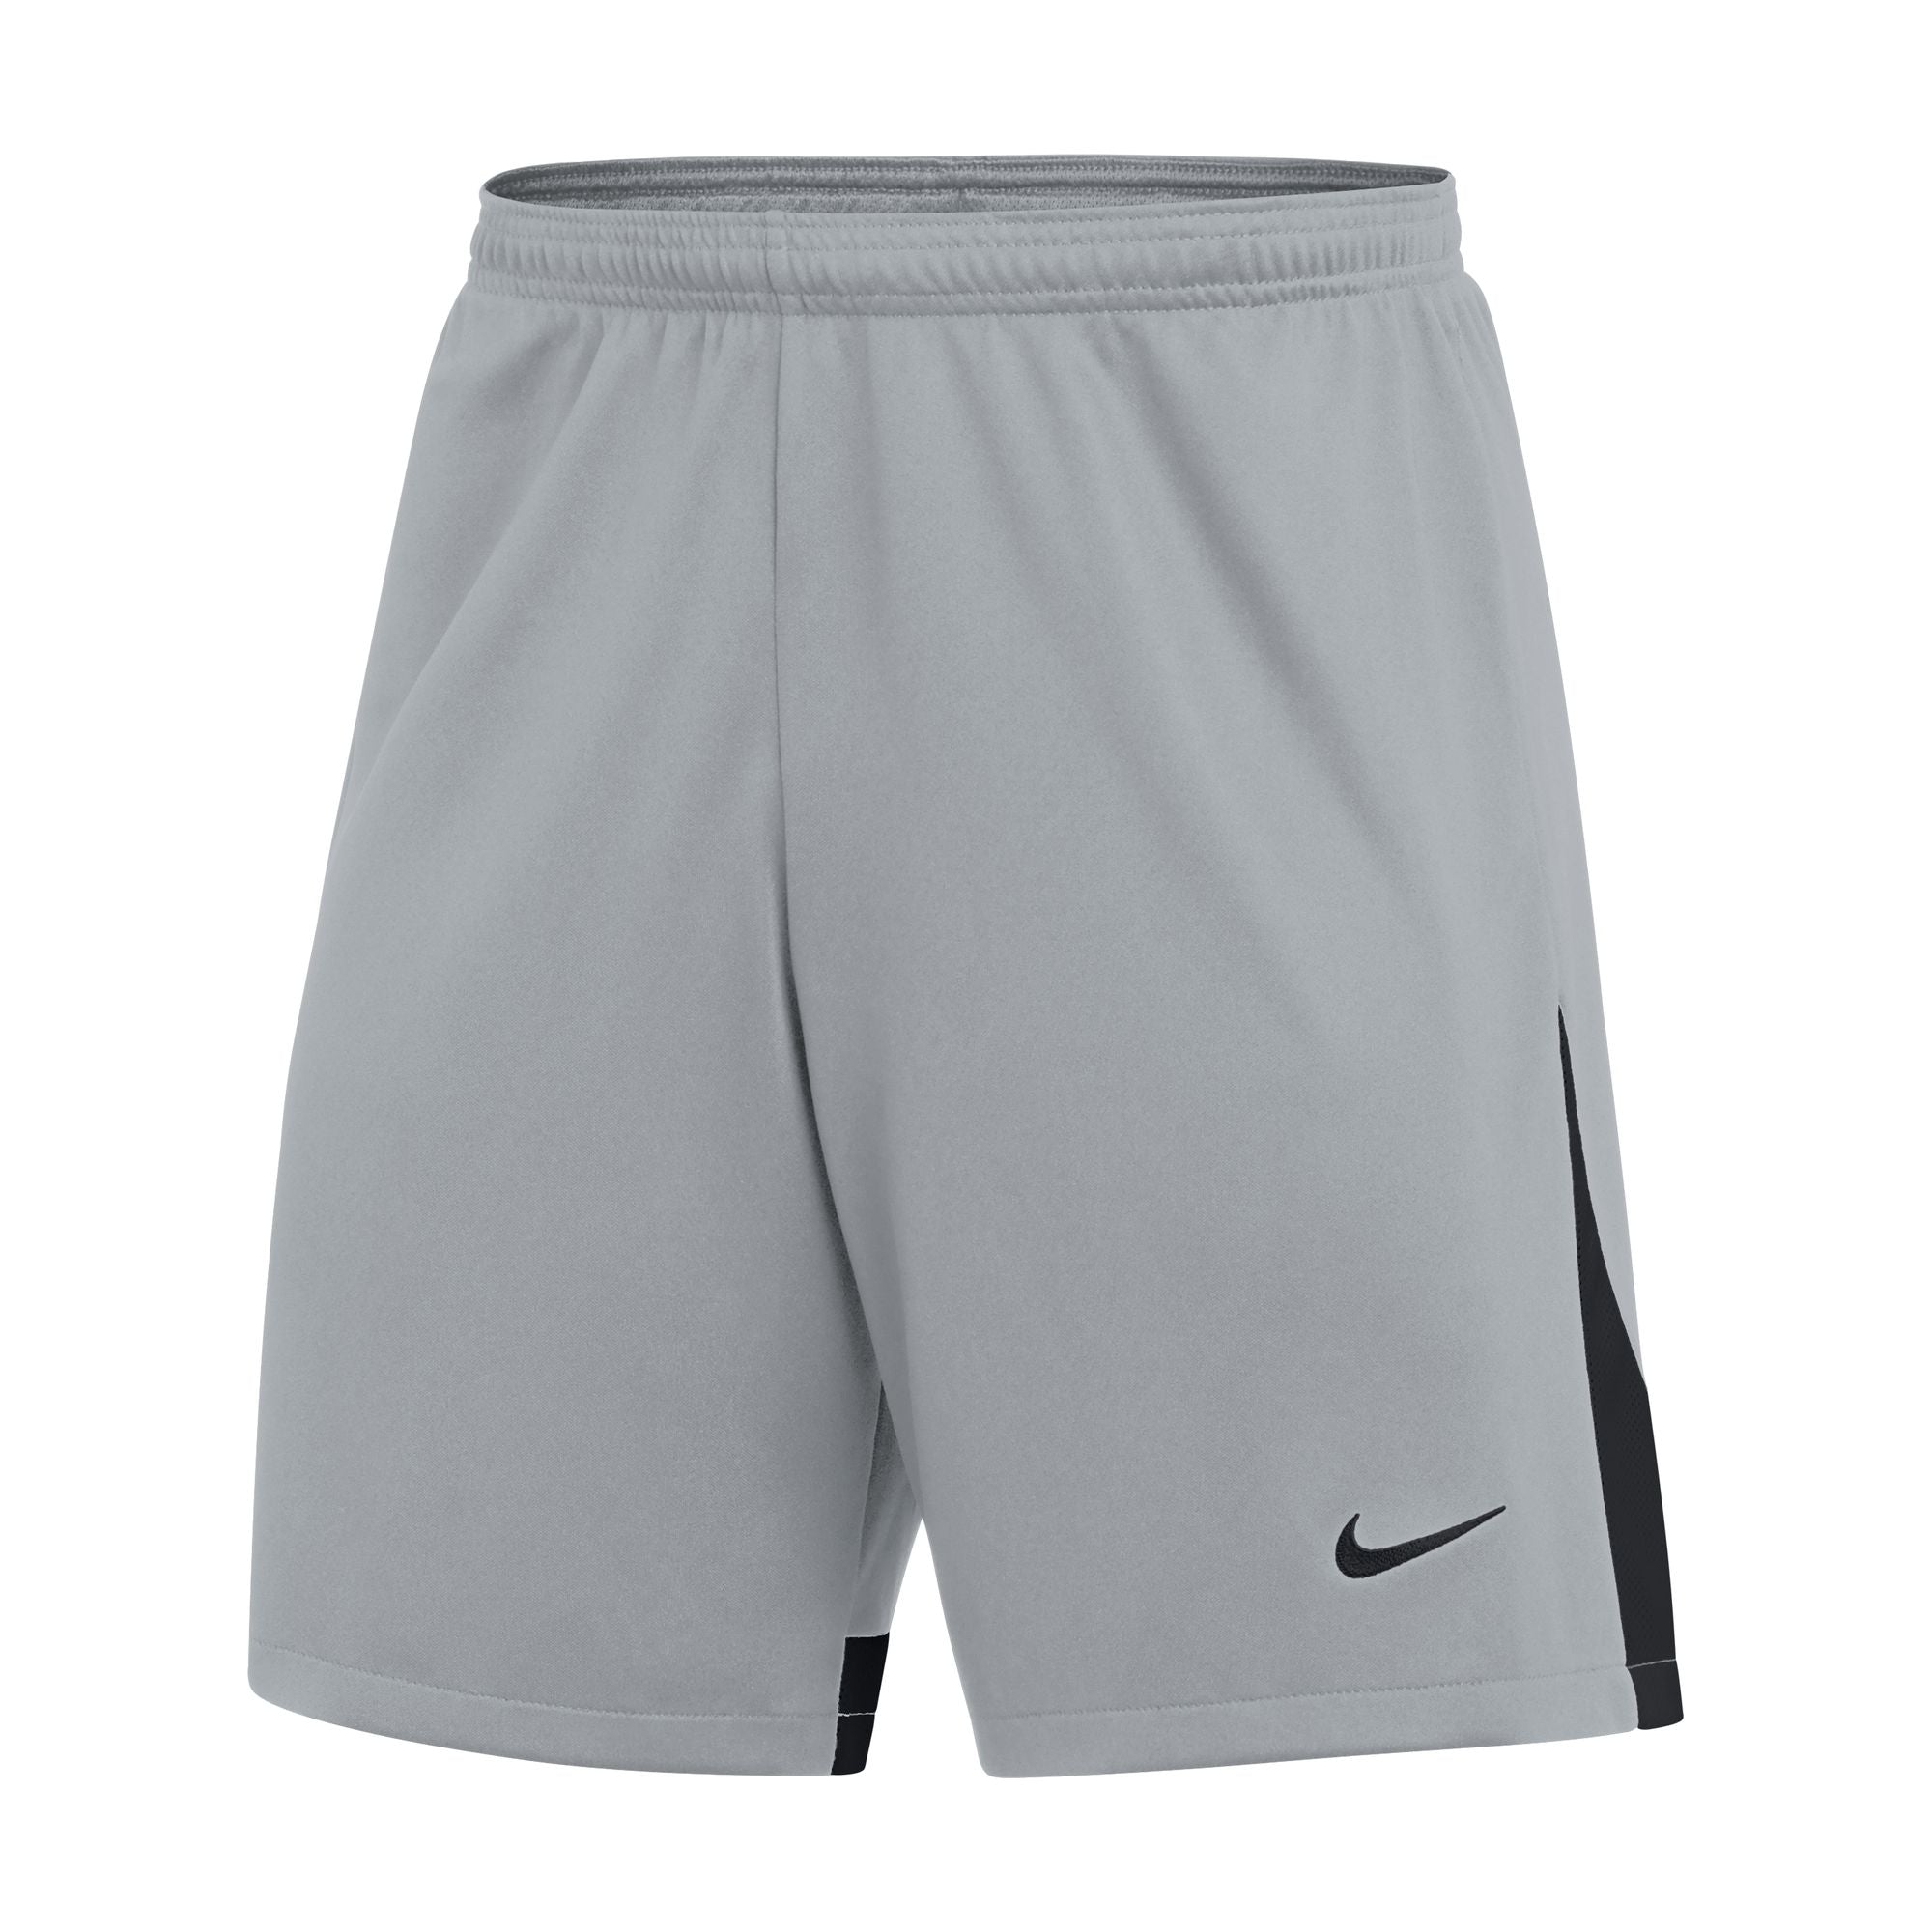 Nike Dri-FIT Men's Knit Soccer Shorts